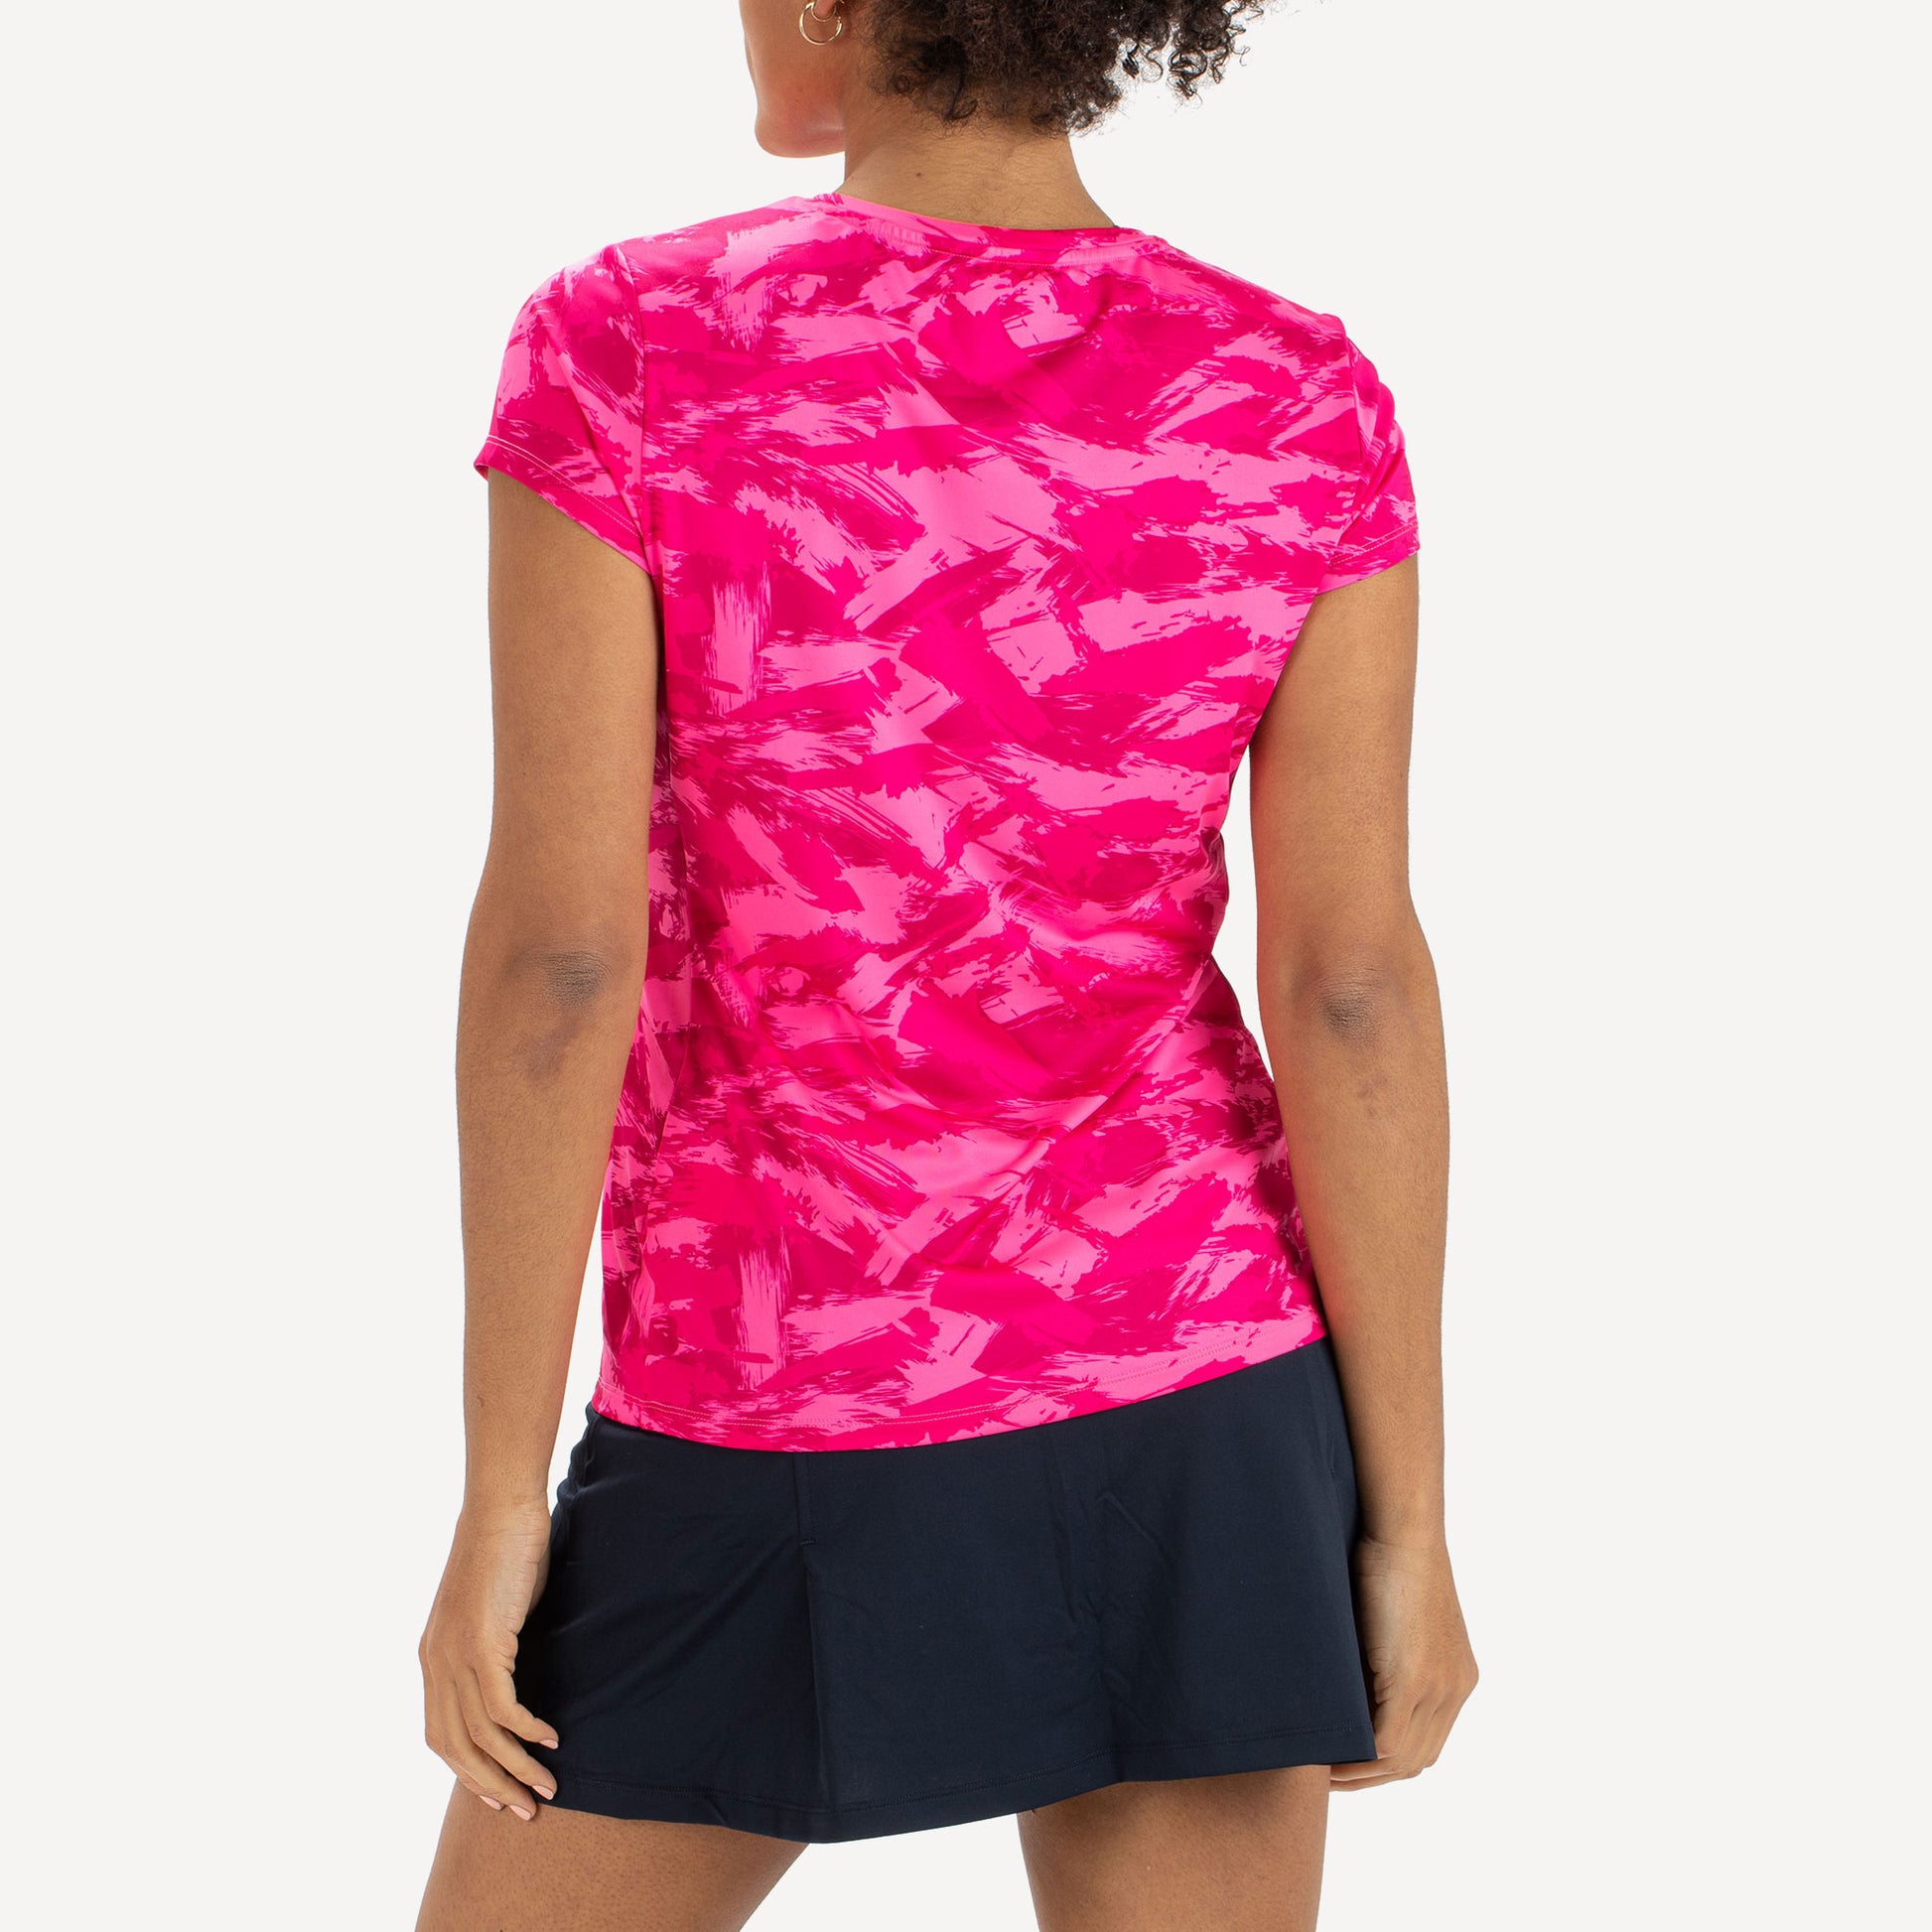 Sjeng Sports Destina Women's Tennis Shirt Pink (2)